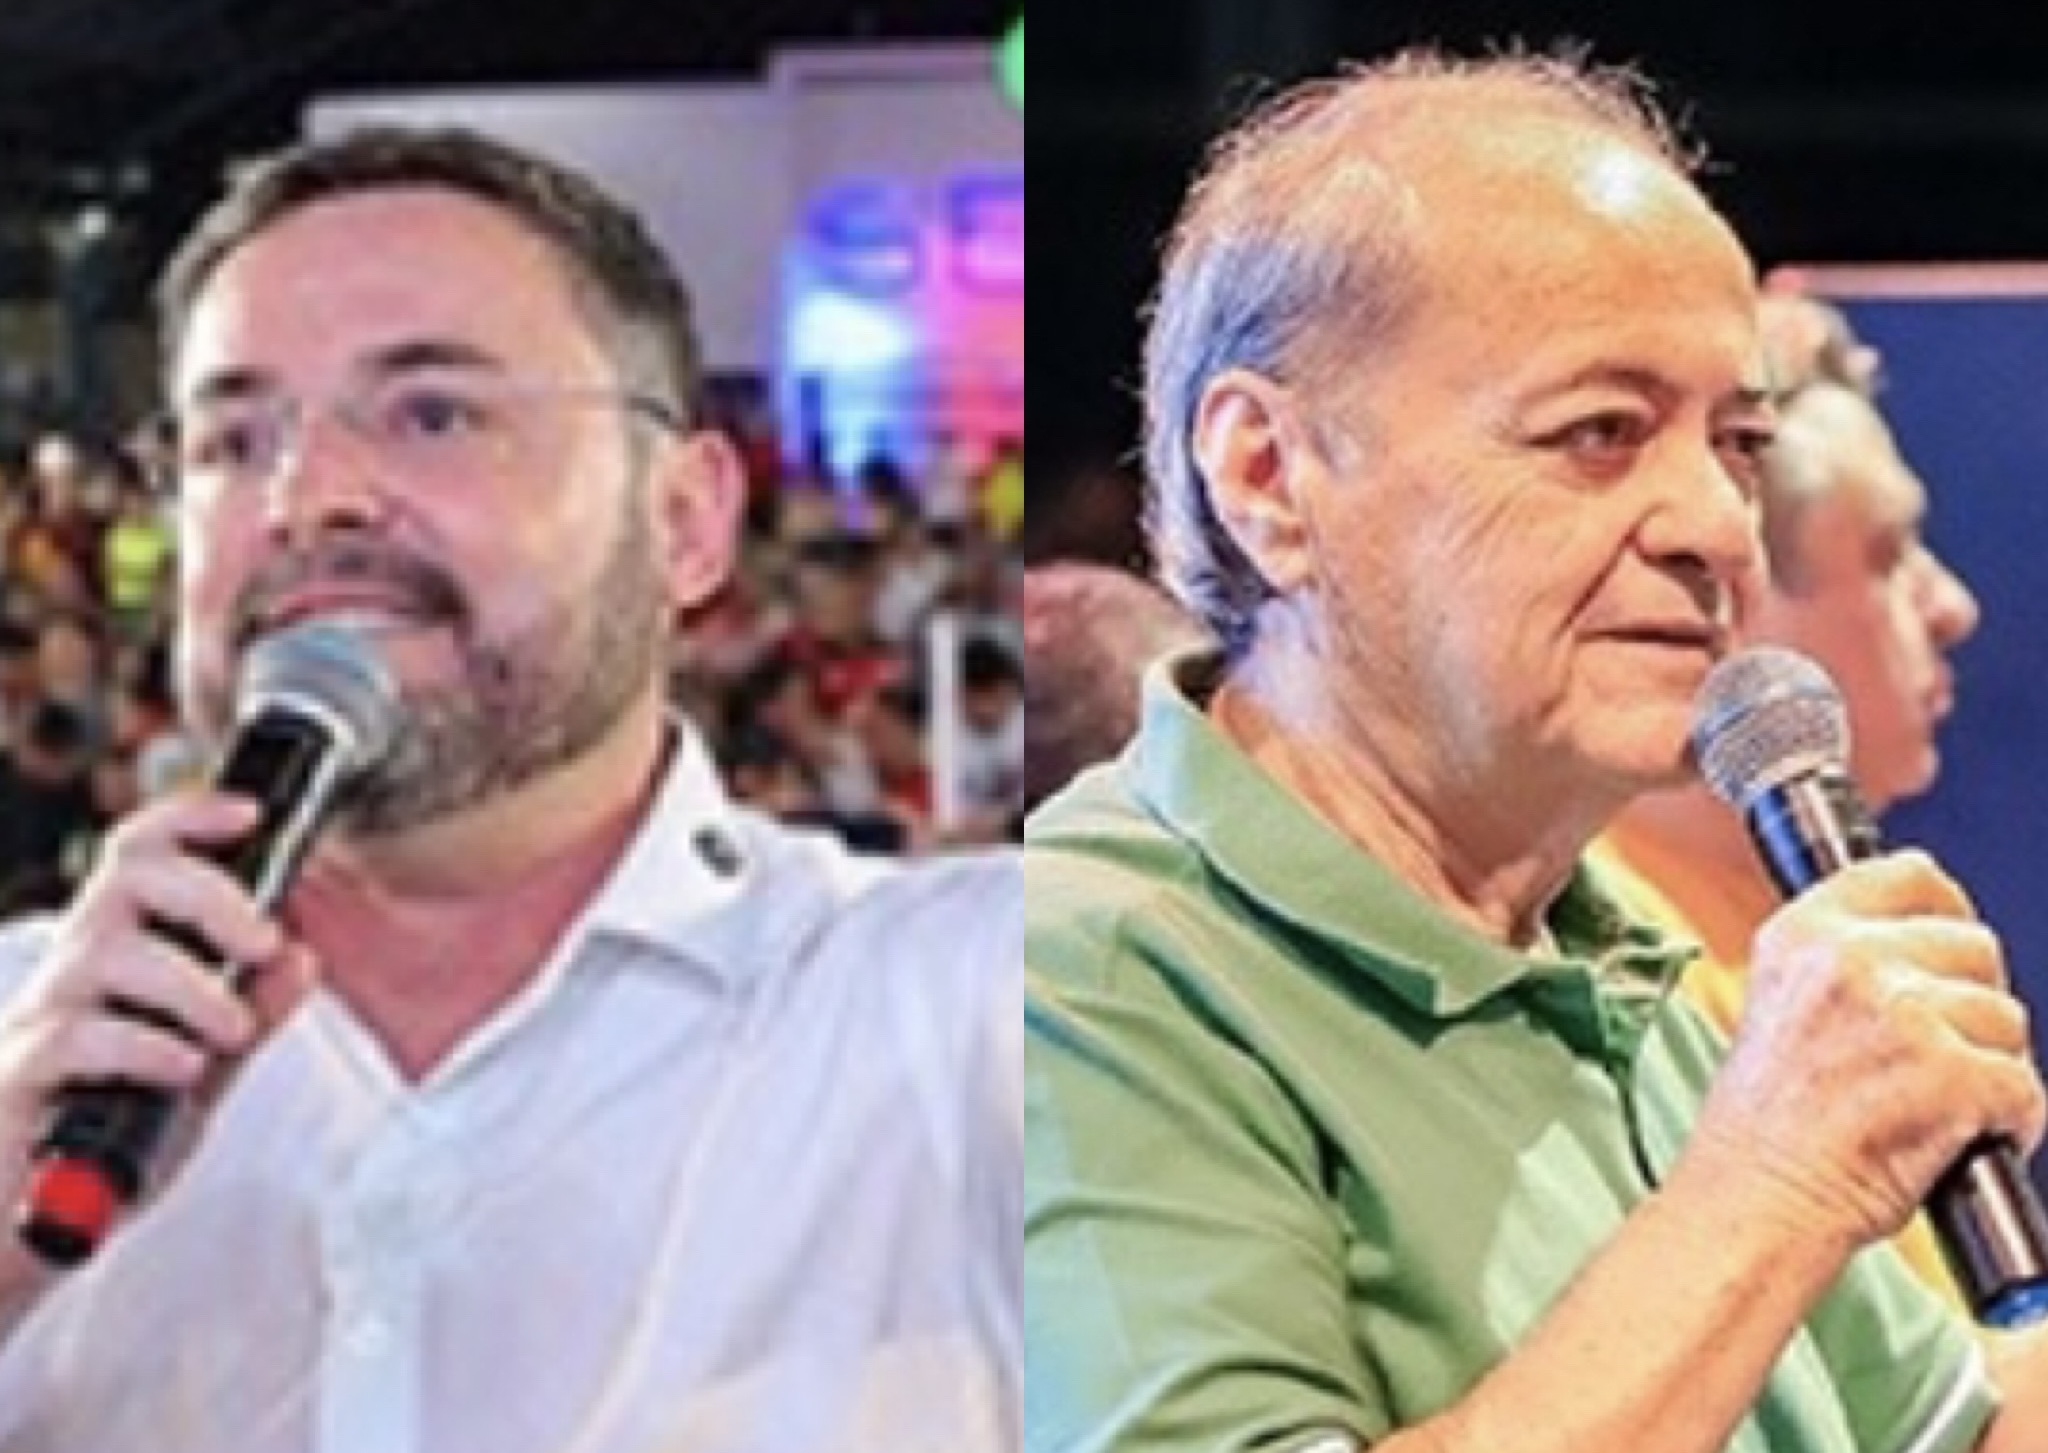 Silvio Mendes e Fábio Novo aquecem disputa eleitoral em Teresina